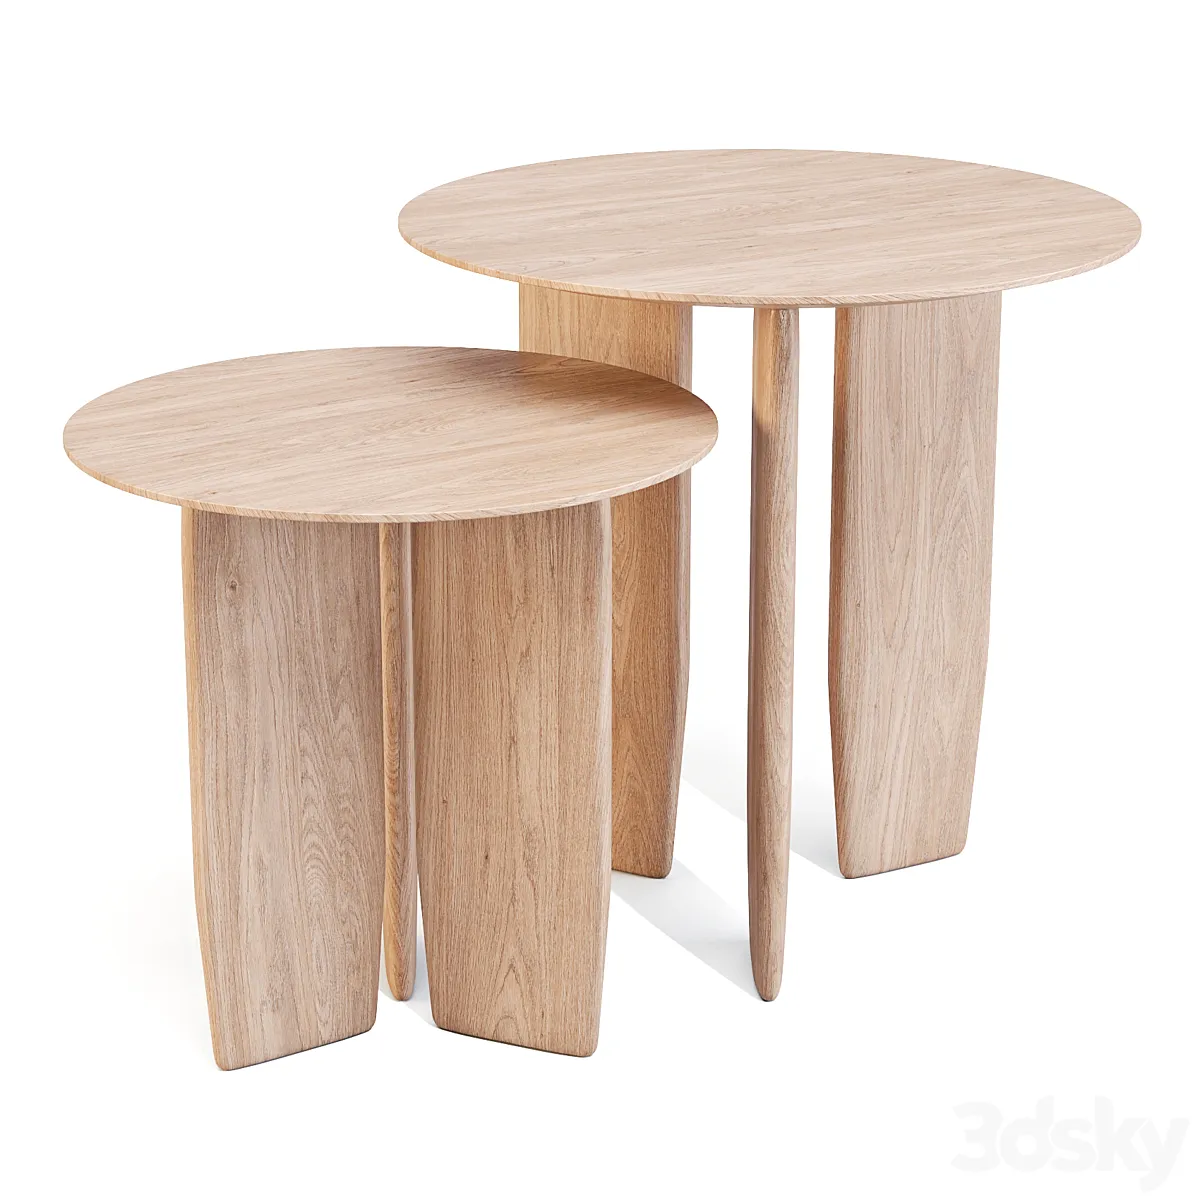 مدل سه بعدی میز و صندلی چوبی ساده Andreu World Table Collection